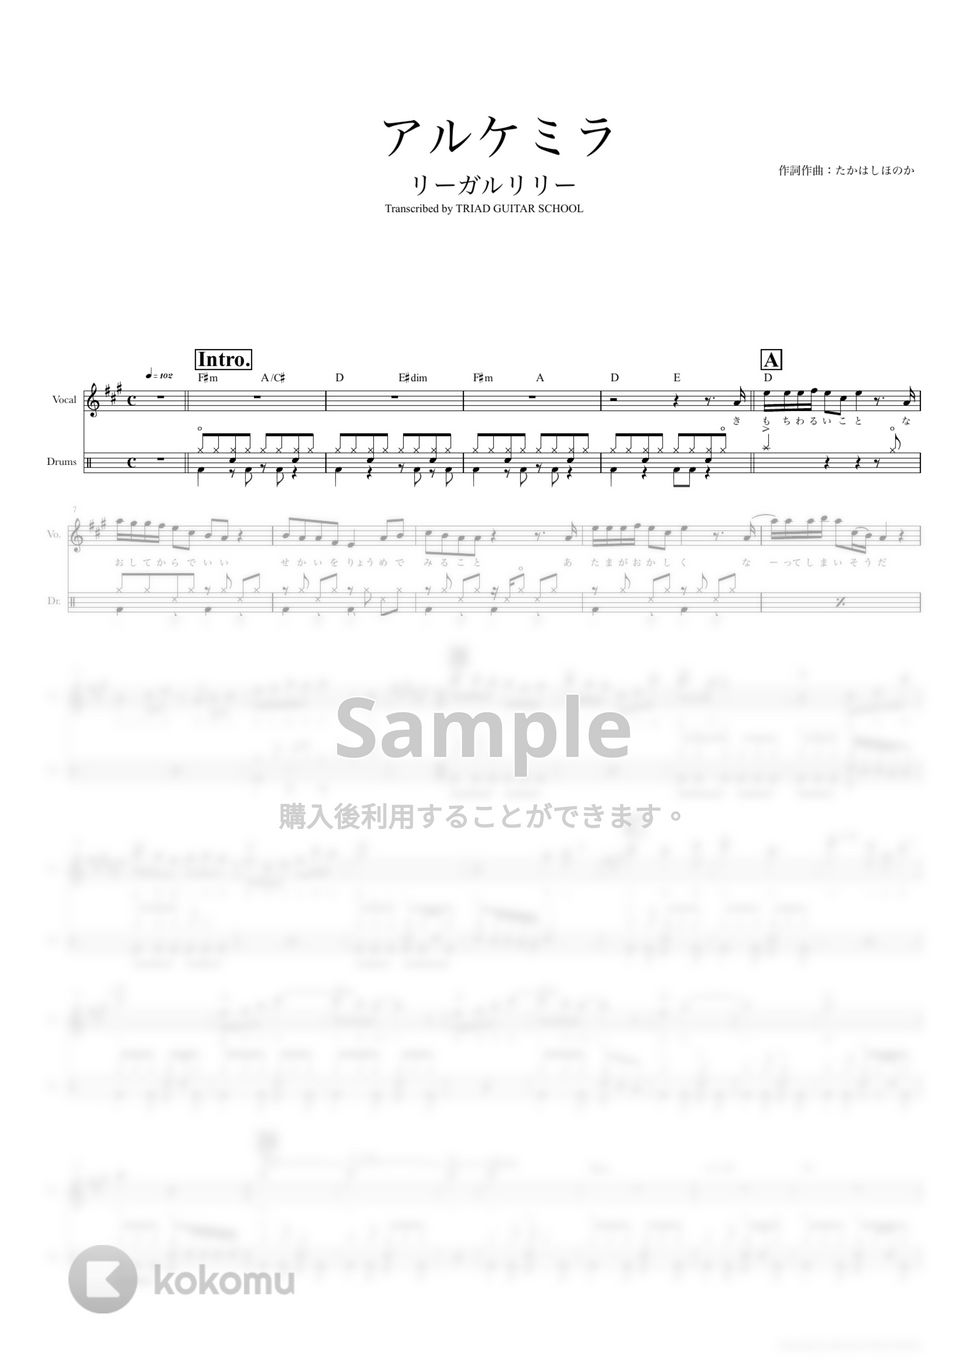 リーガルリリー - アルケミラ (ドラムスコア・歌詞・コード付き) by TRIAD GUITAR SCHOOL